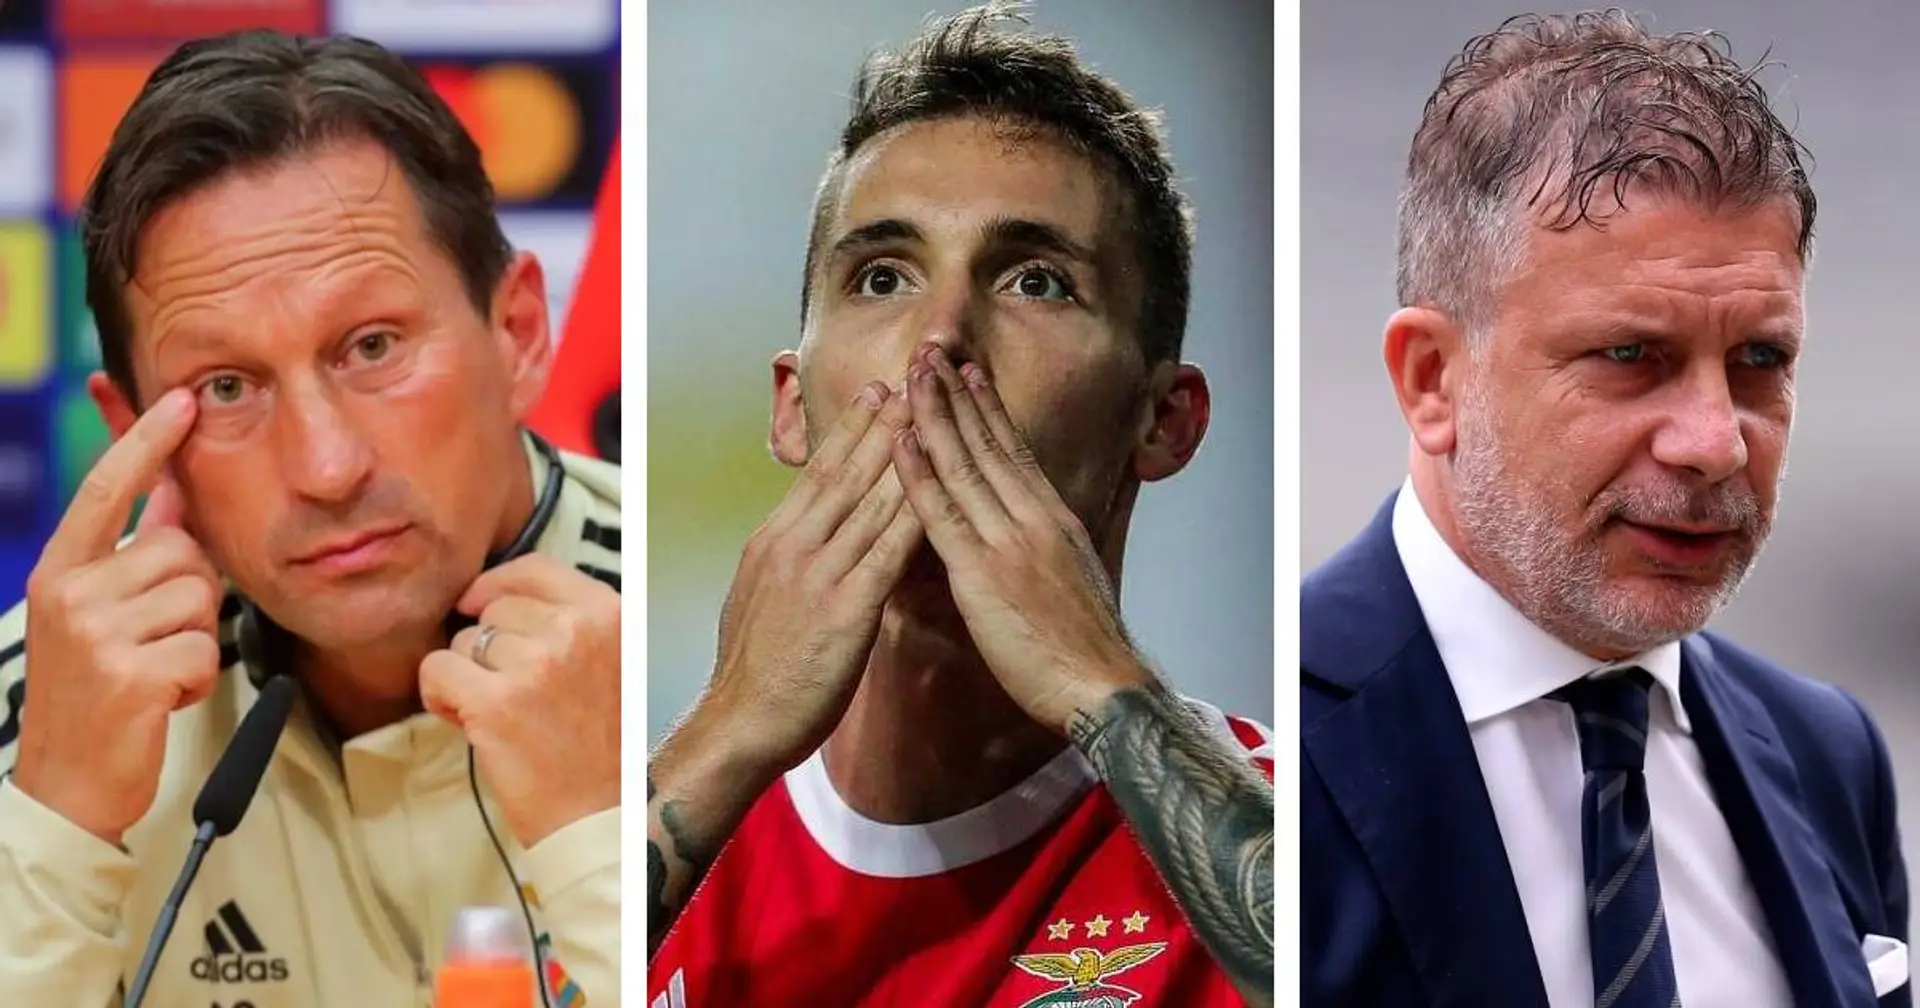 "Deve decidere lui": il tecnico del Benfica conferma il possibile addio di Grimaldo, la Juve fiuta il colpo